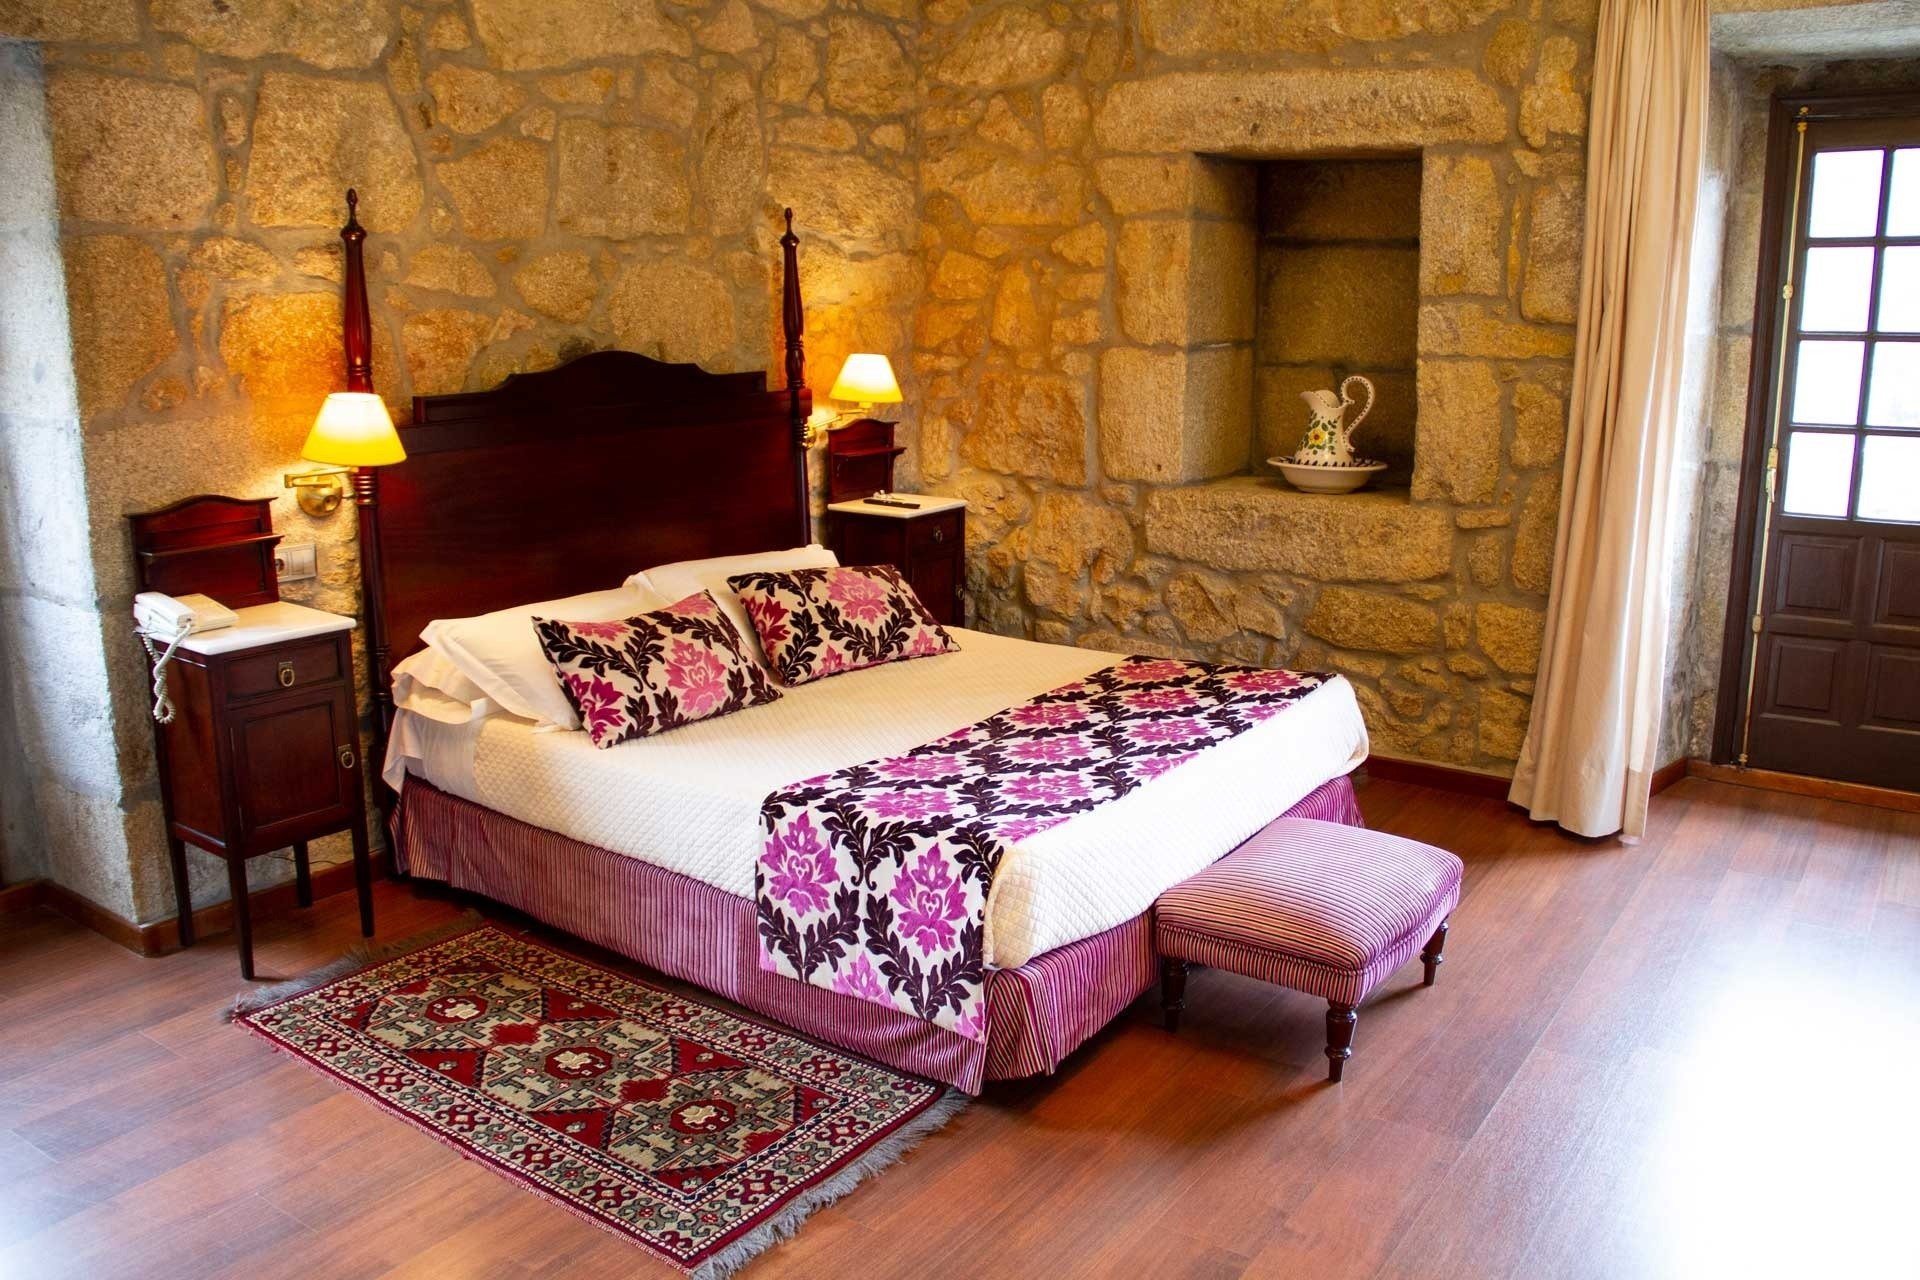 una habitación con una cama y una alfombra en el suelo